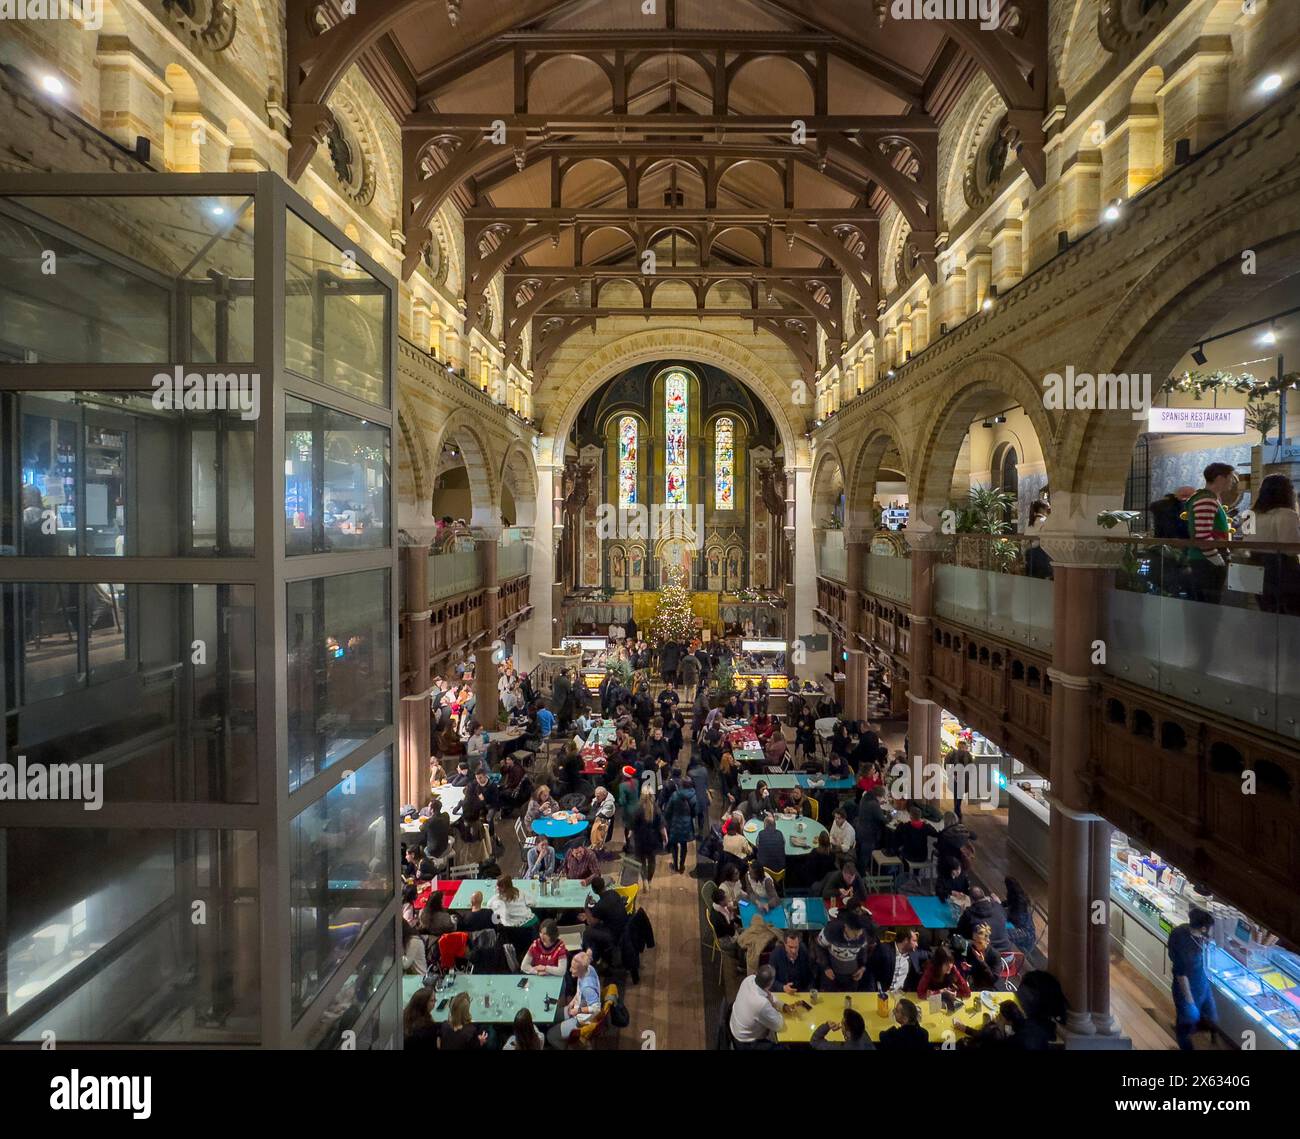 Interior of Mercato Mayfair. London. Stock Photo